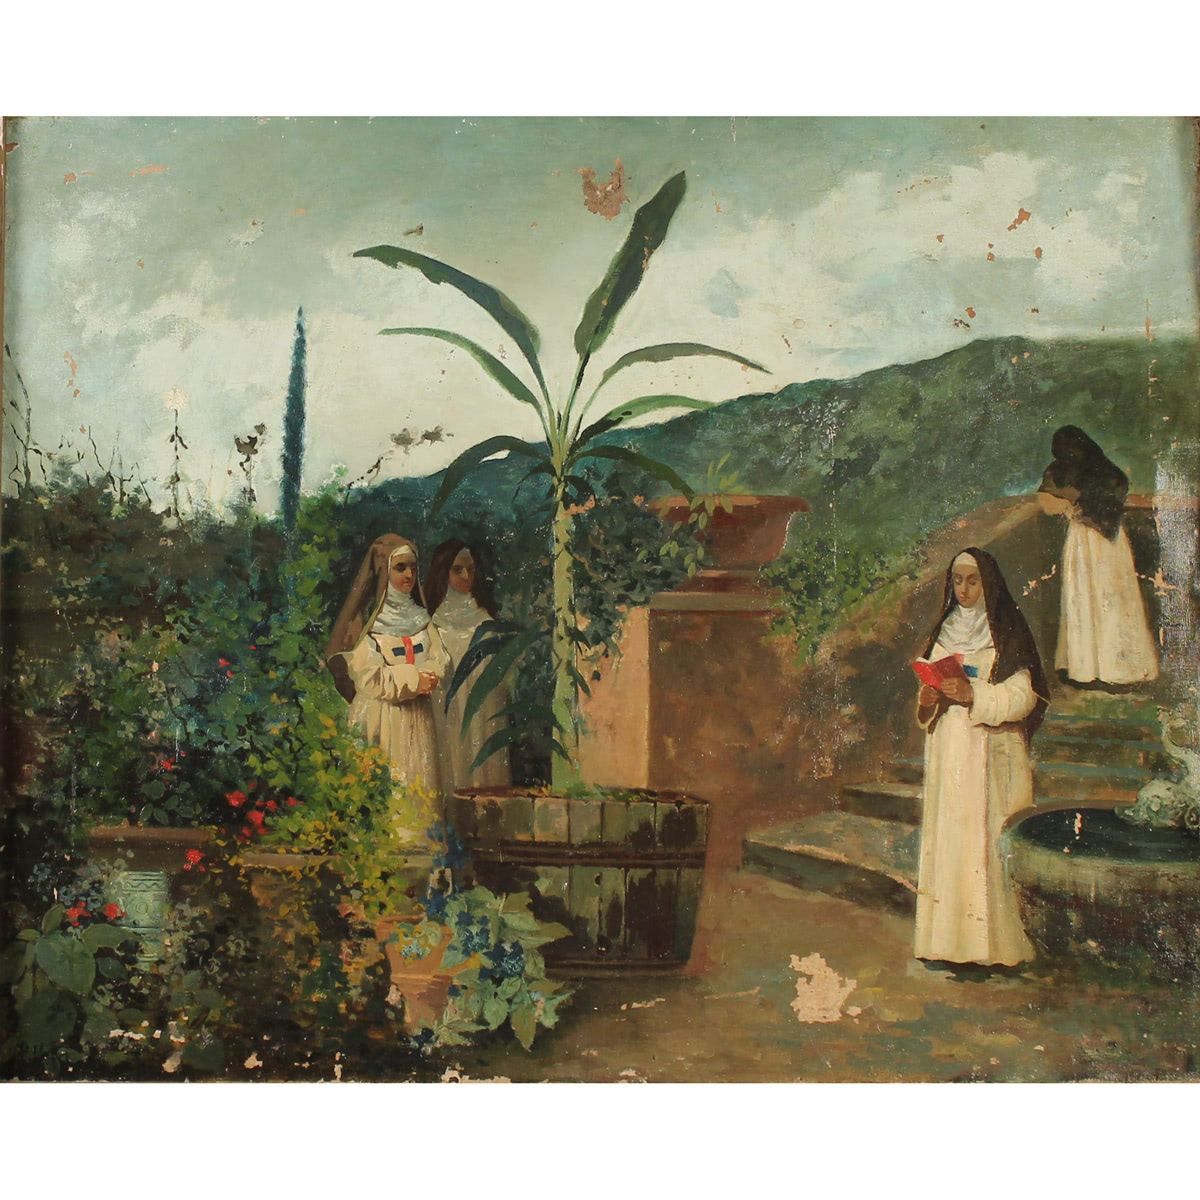 Paolo Vetri (1855/1937) "Suore in preghiera" - "Sisters in prayer"